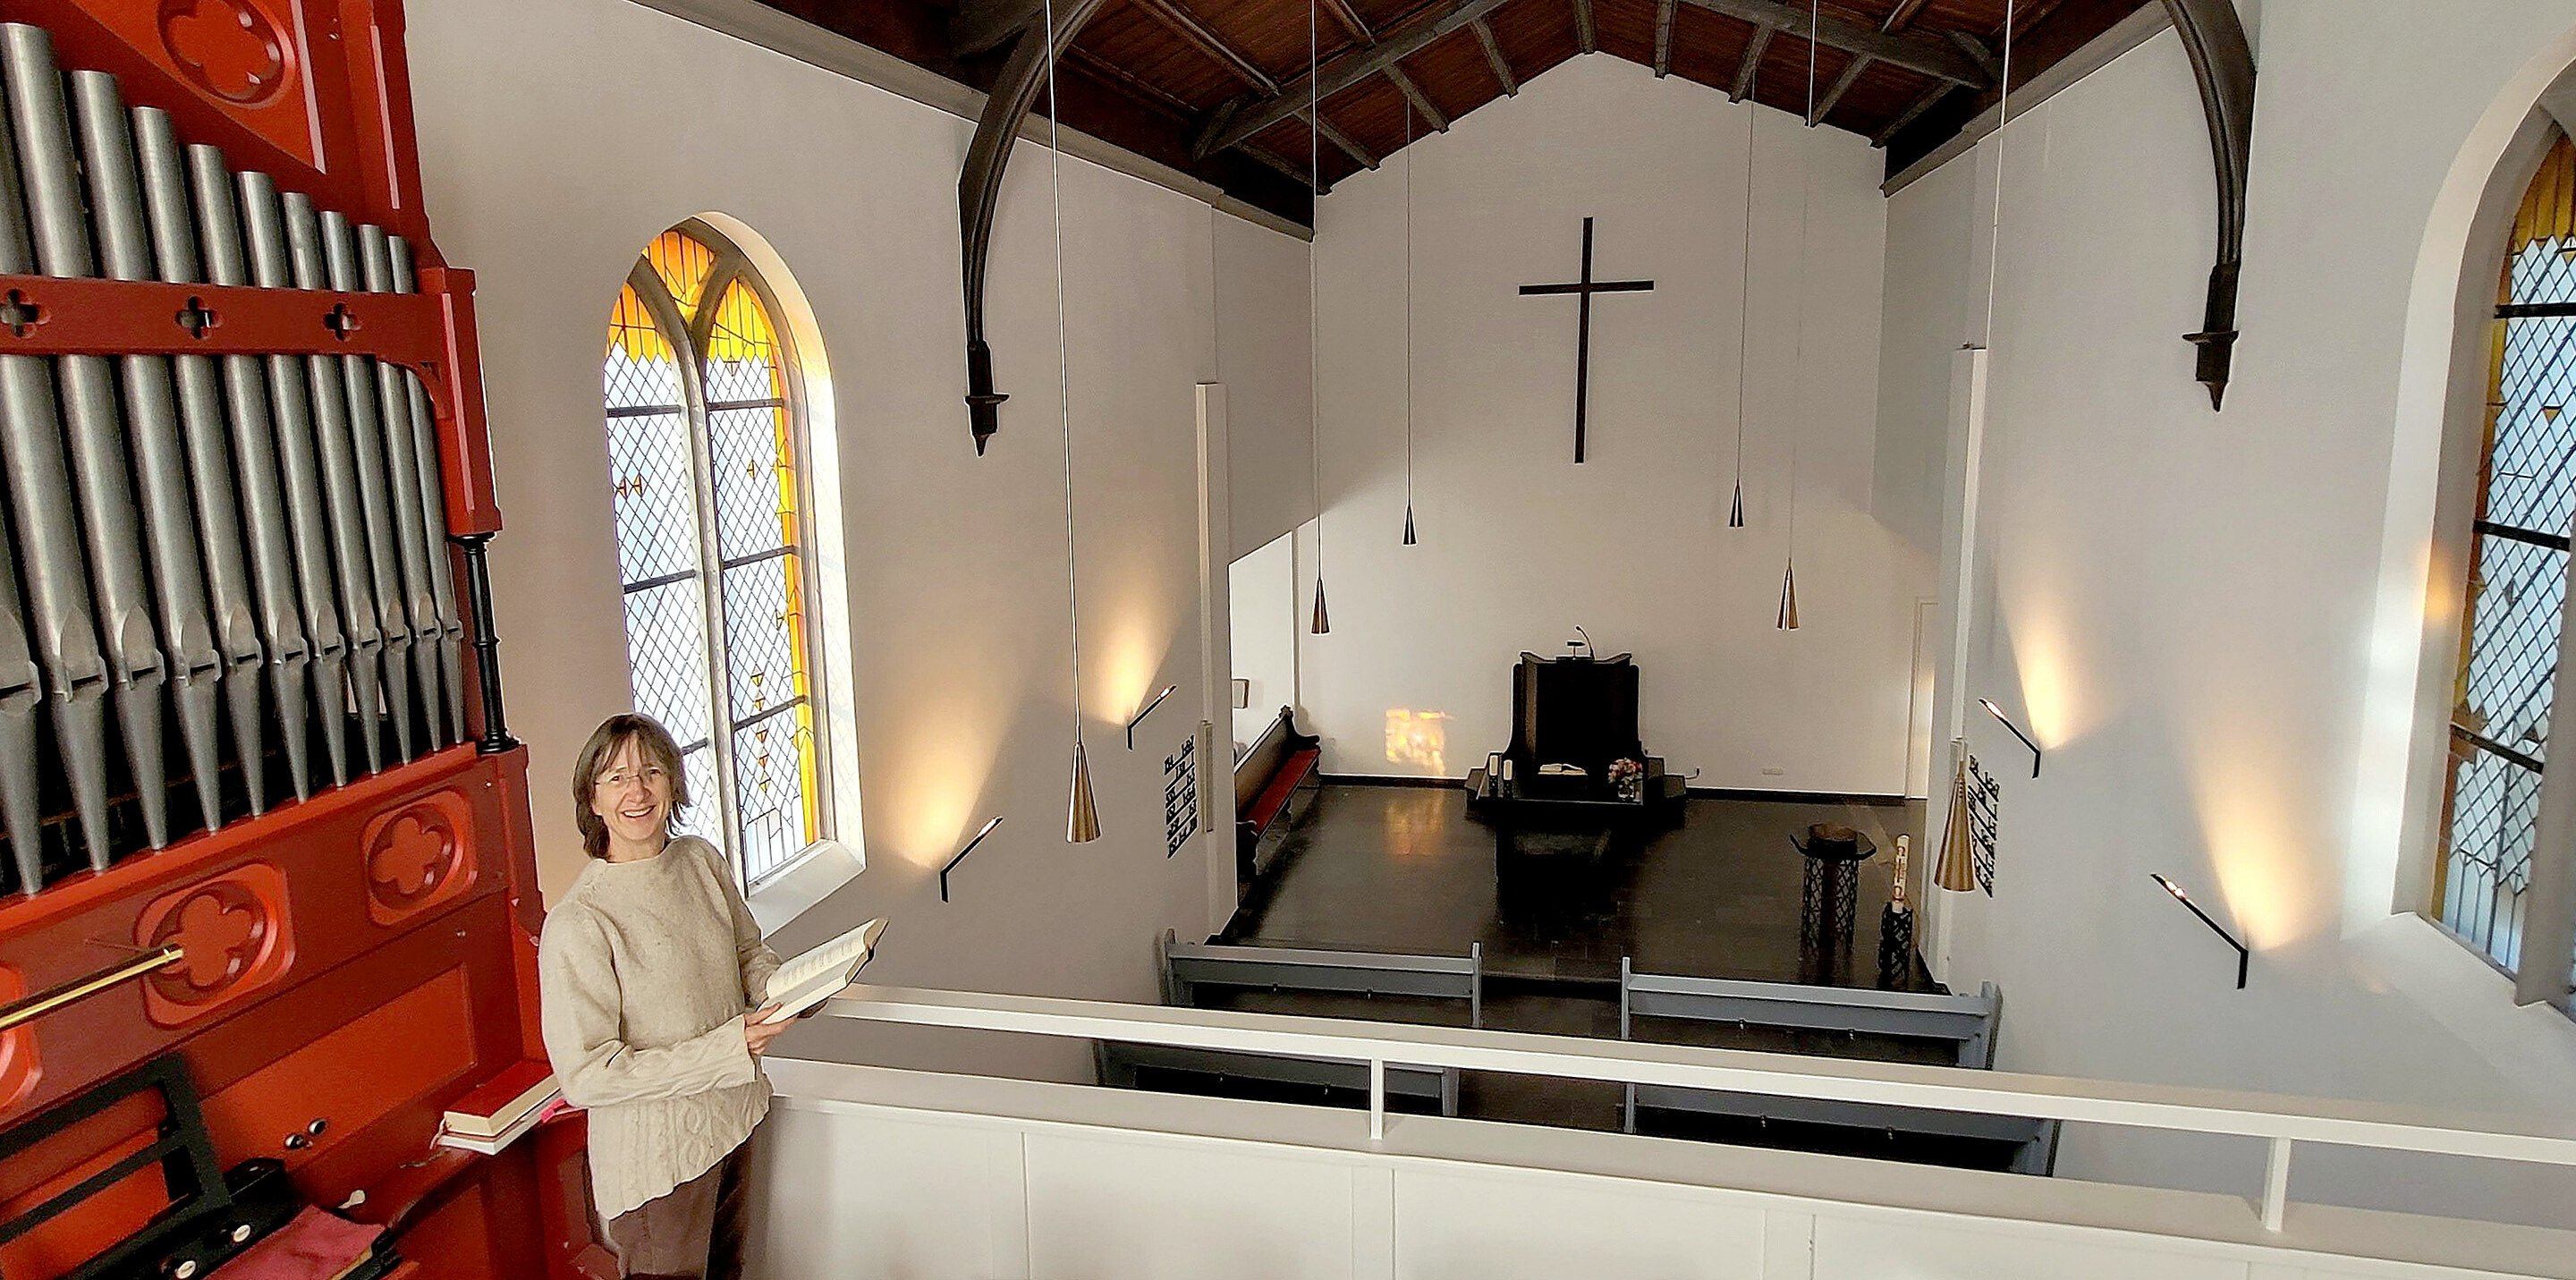 Pfarrerin Alders ist Hausherrin der Kirche mit ihrem für die unierte Kirche im Rheinland typischen schlichten Innenraum.